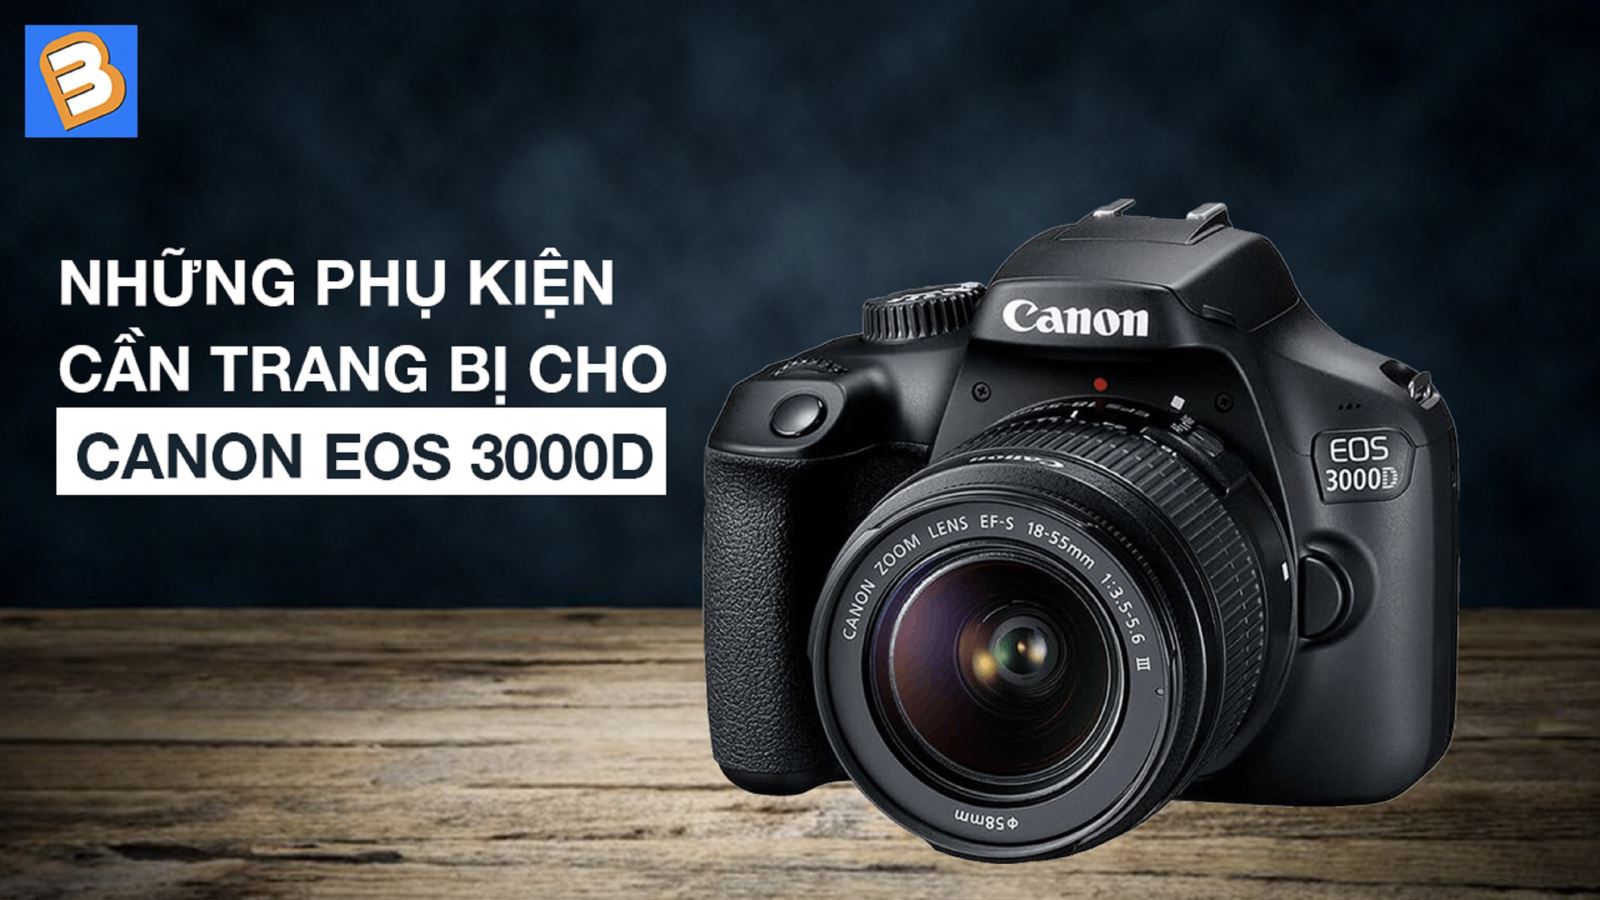 Những phụ kiện cần trang bị cho Canon EOS 3000D